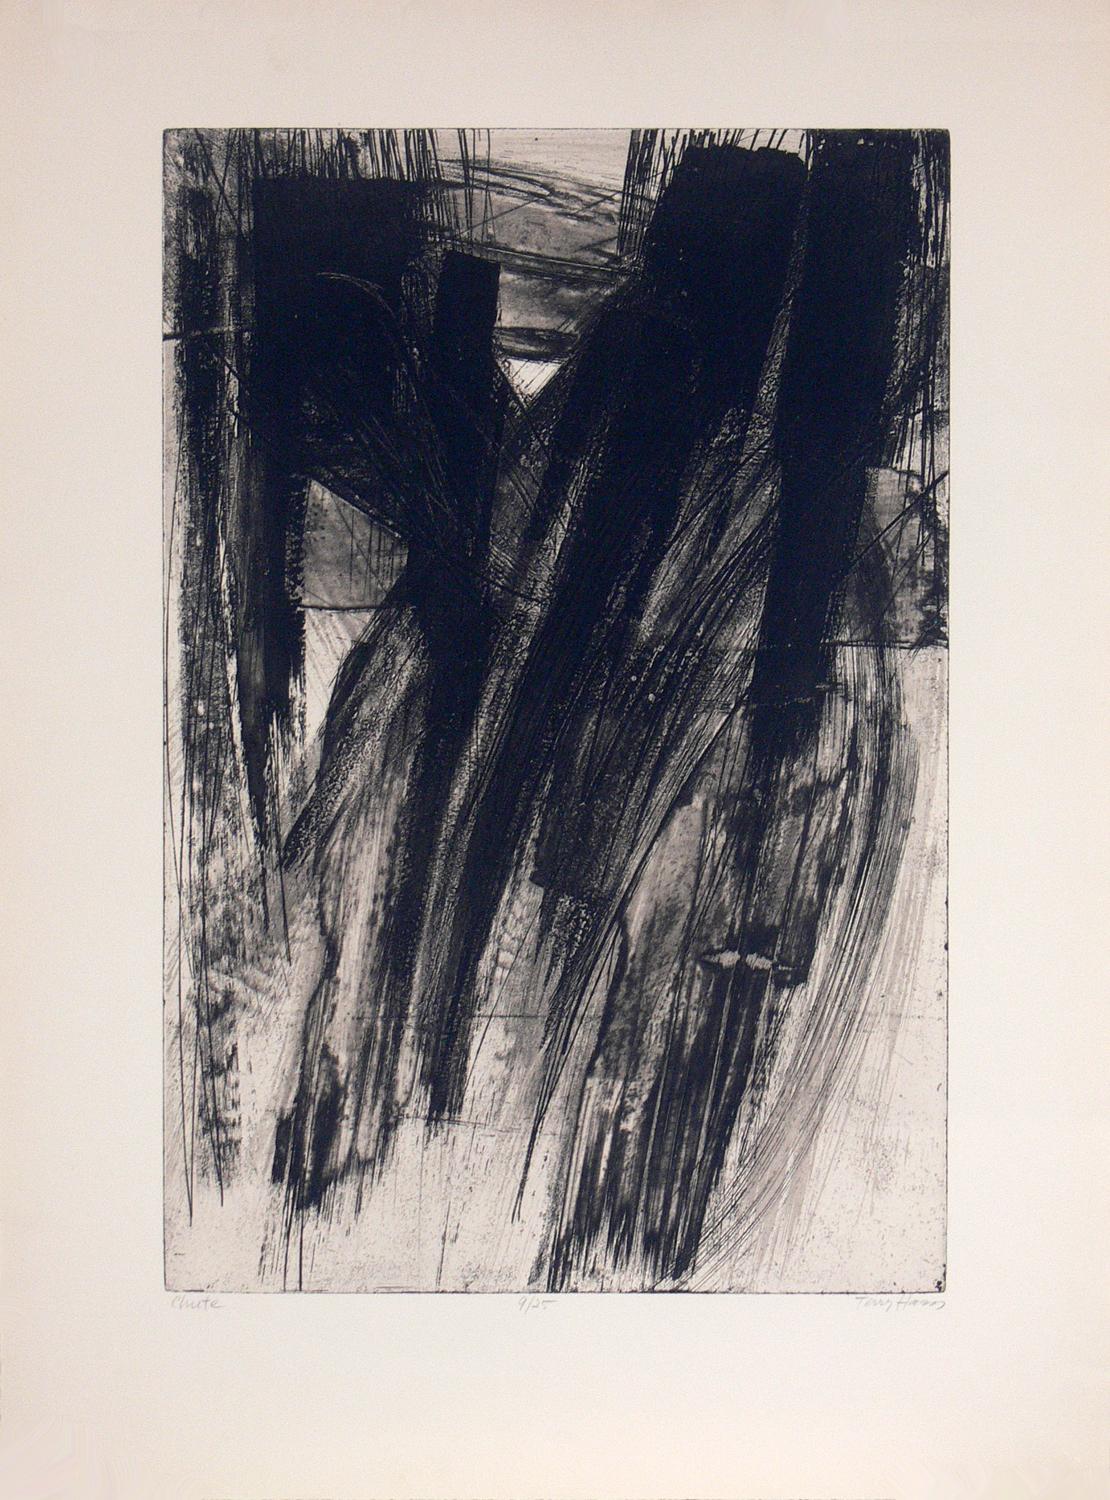 Sélection d'impressions abstraites en noir et blanc. De gauche à droite, ce sont :
1) Lithographie abstraite de Terry Haan, vers les années 1960. Crayon signé et numéroté par l'artiste, numéro 9 d'une édition très limitée de 25. Il mesure 33